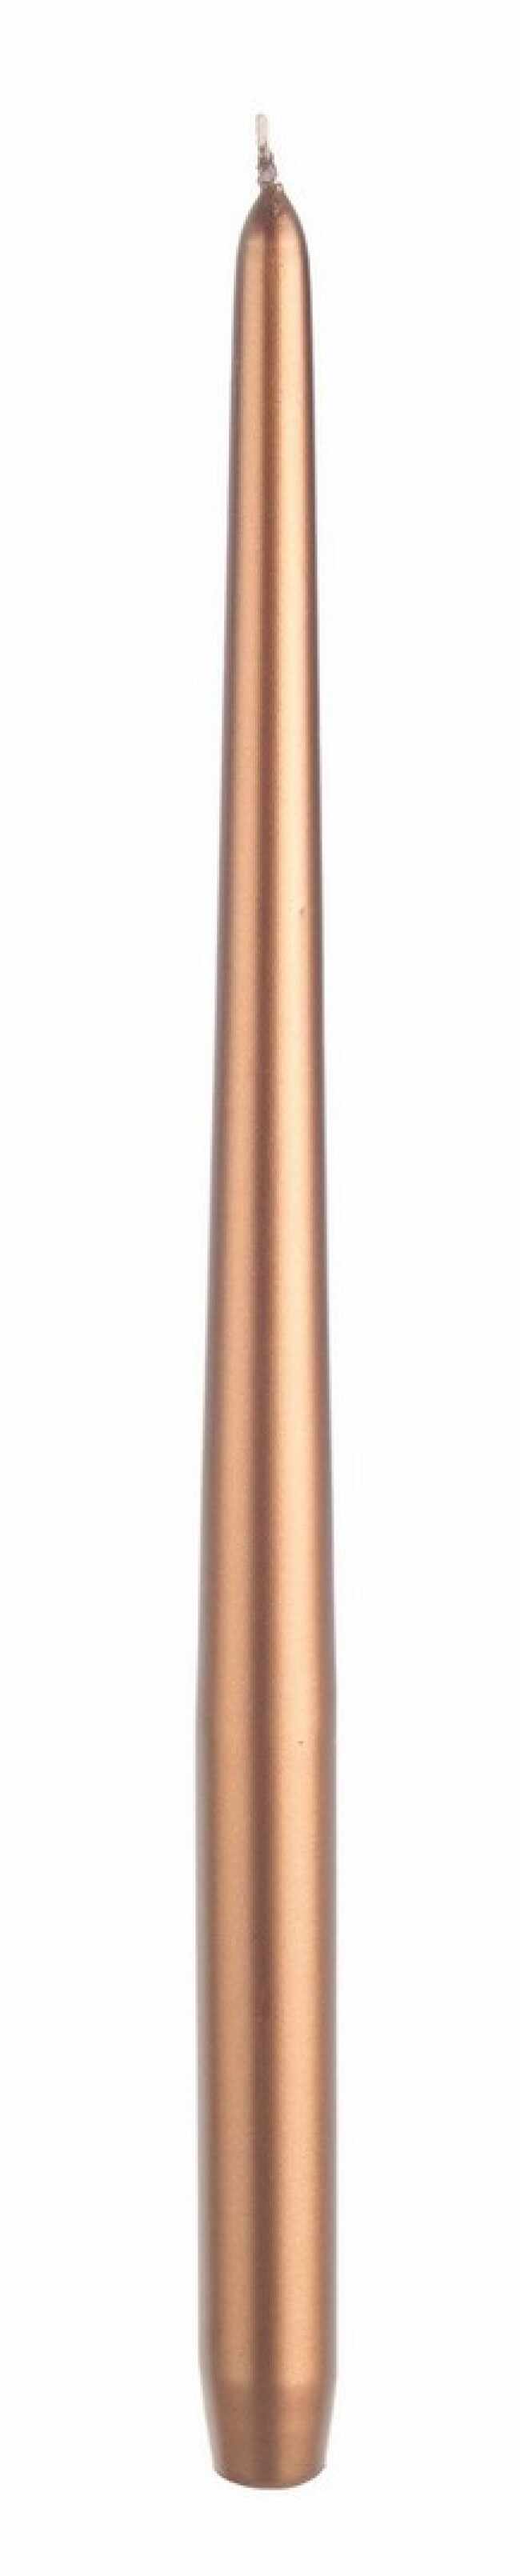 Lumanare conica Basic Tall Cupru, Ø2,5xH40 cm